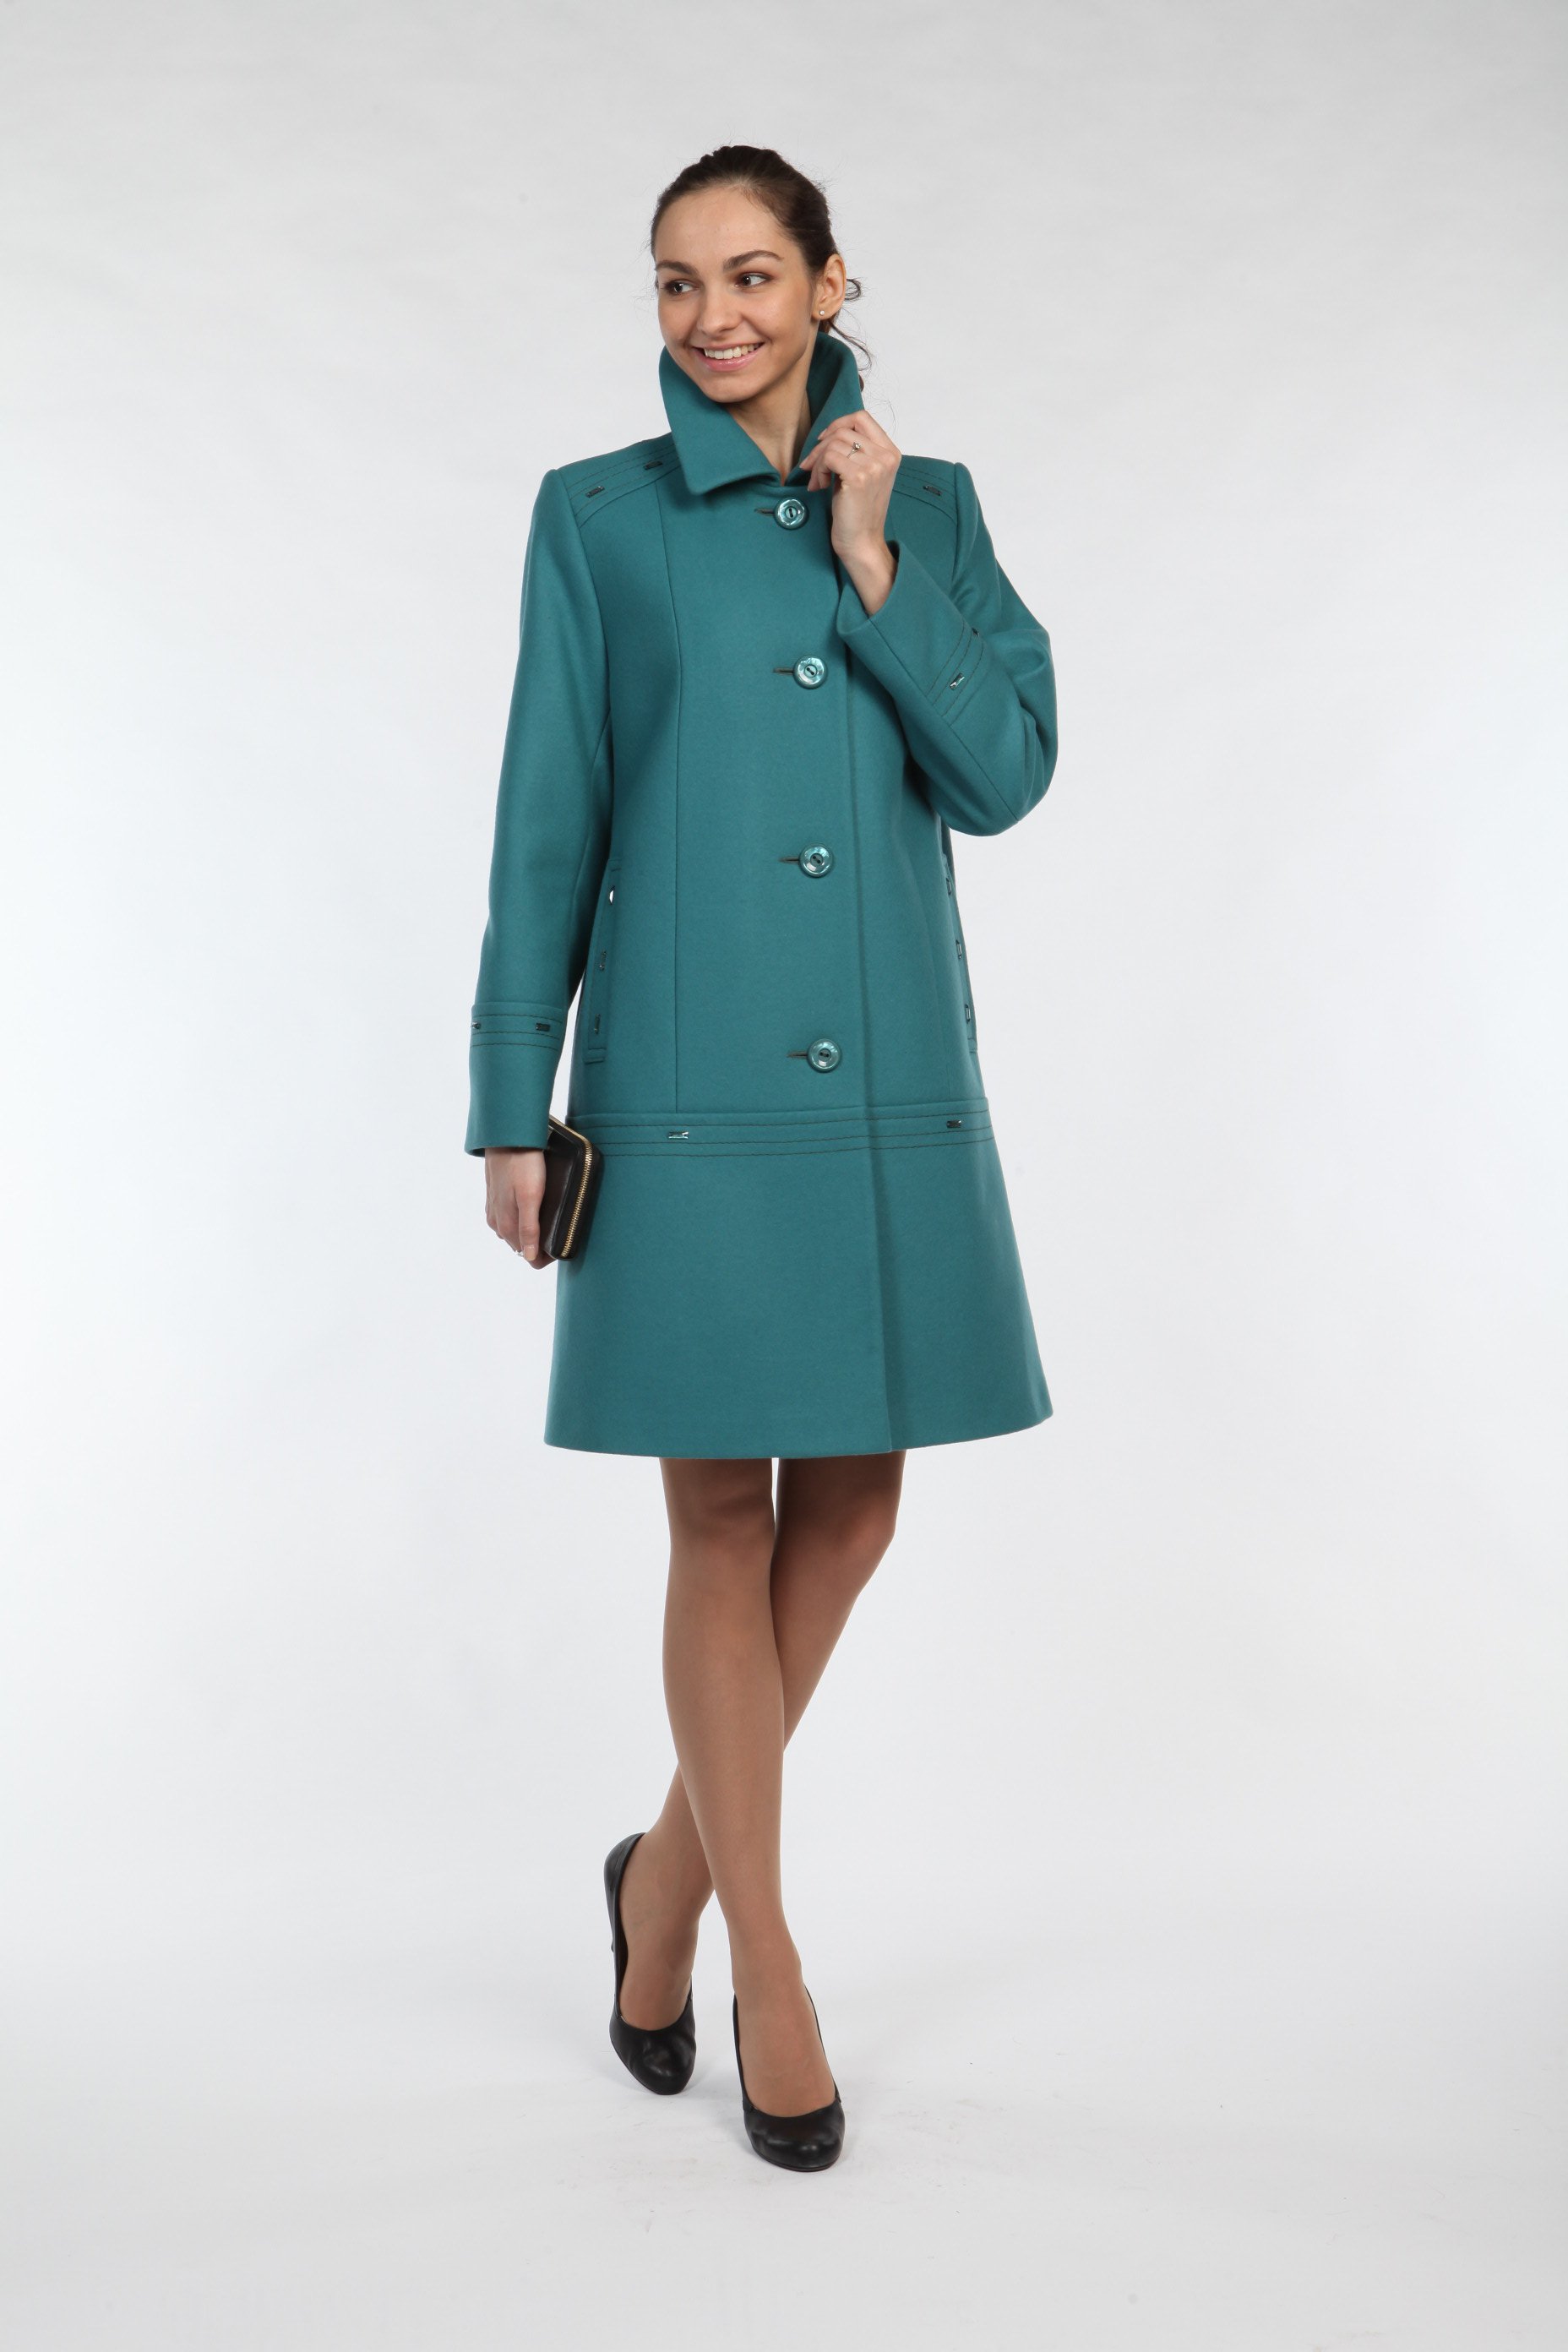 Купить женское пальто в москве демисезонное модное. Модель 2050 ВЭШ пальто. Пальто фабрики vesh. Пальто фирмы Cashemir. Пальто Коломенская фабрика ВЭШ.